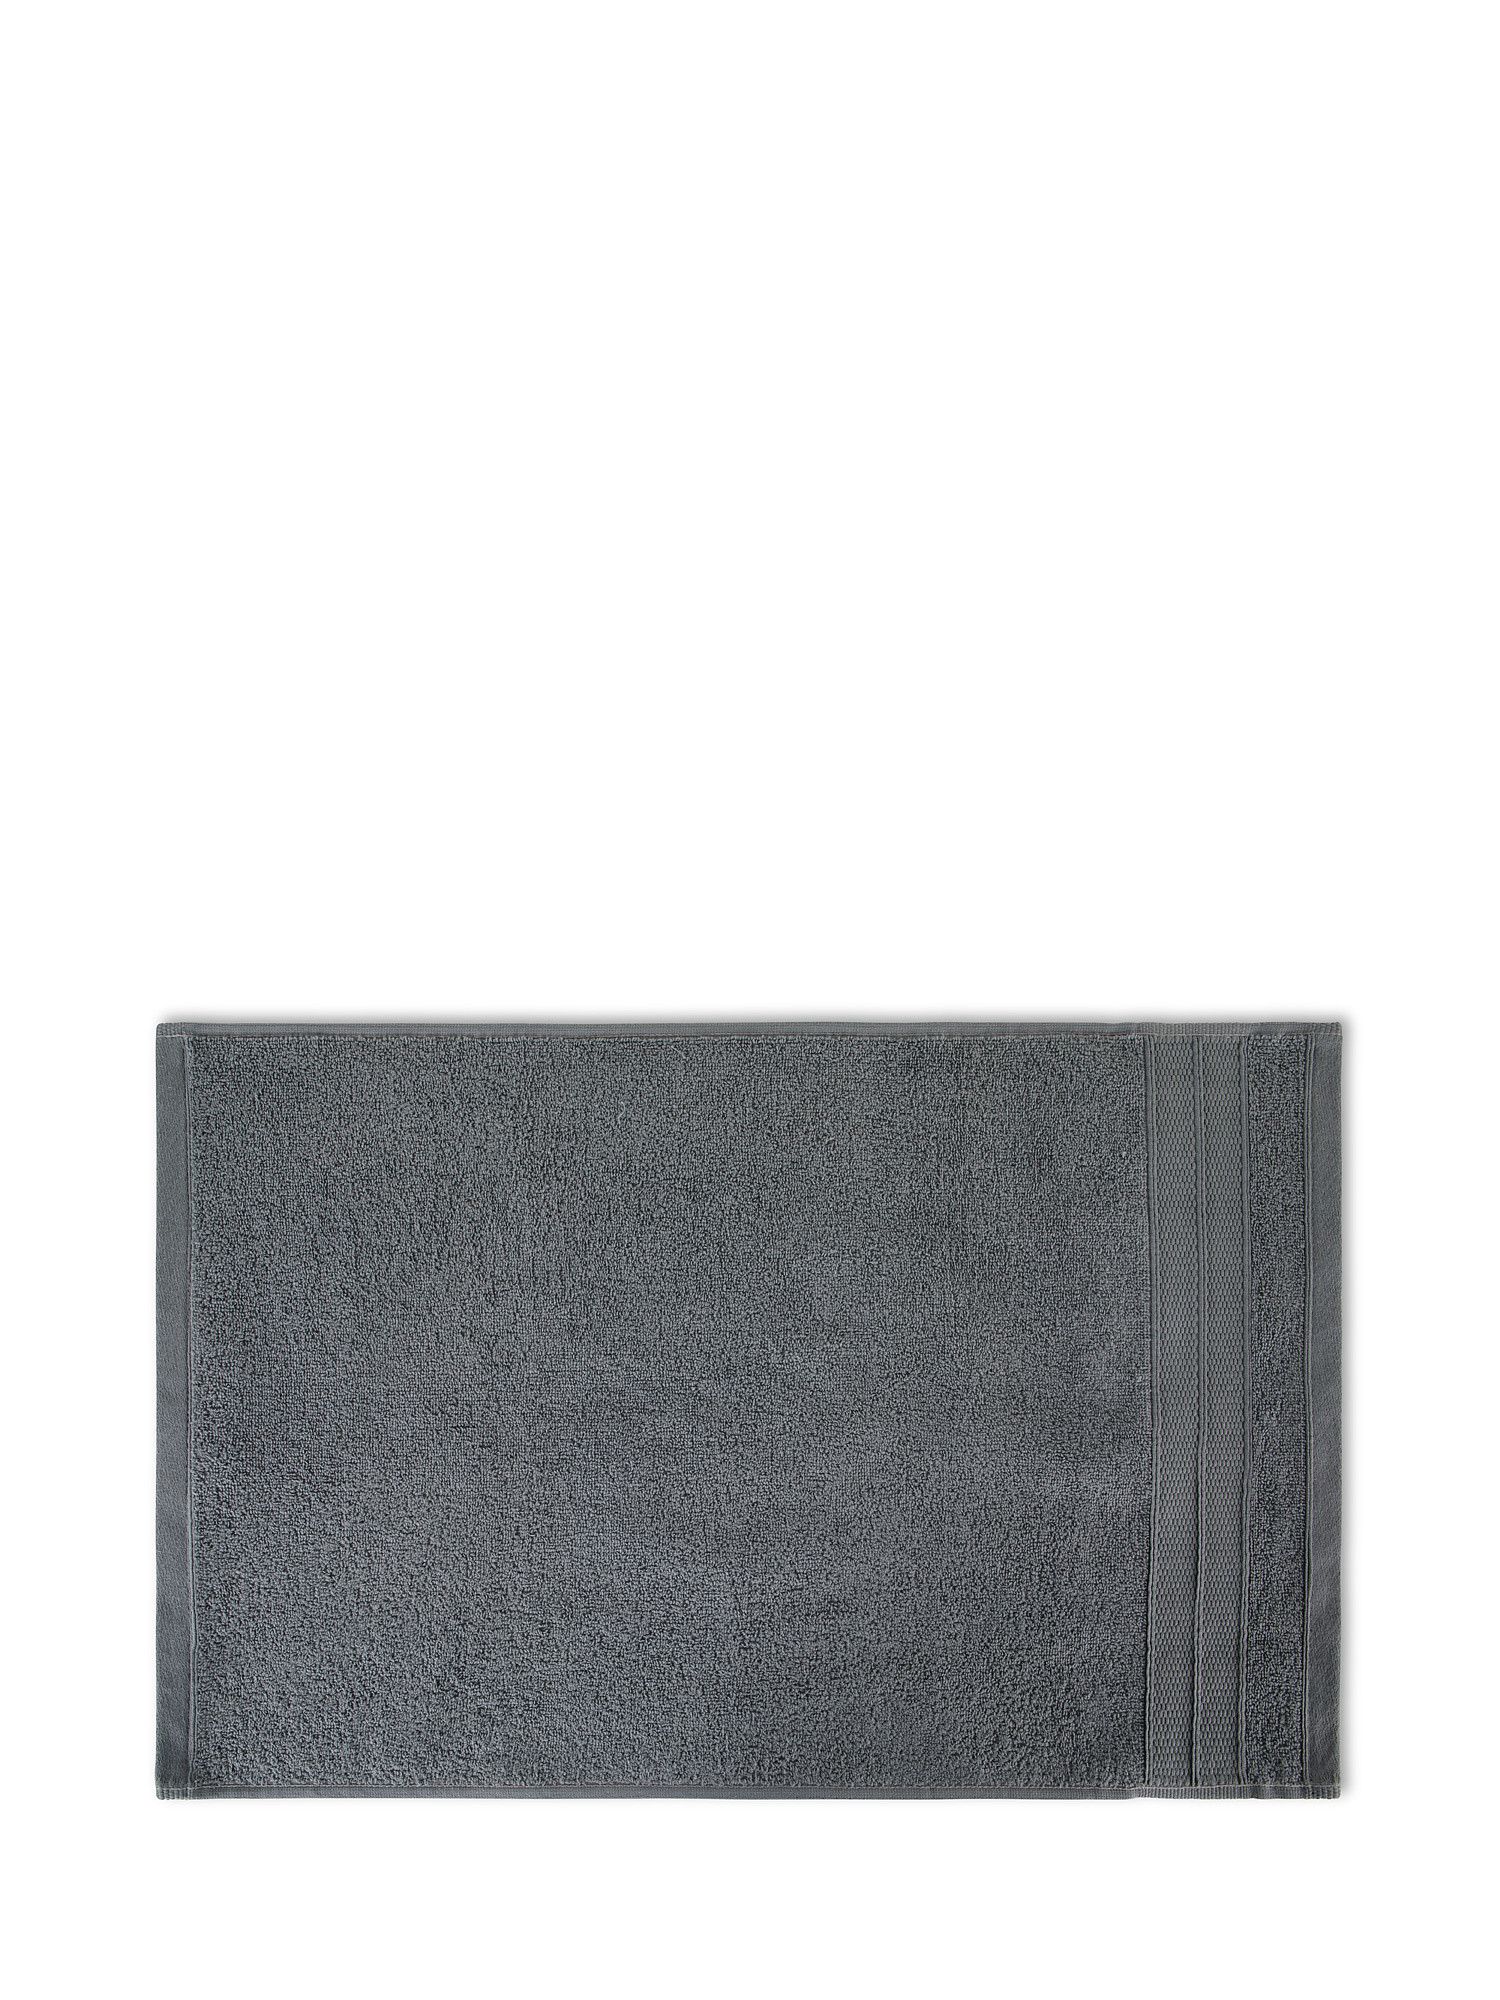 Asciugamano spugna di cotone tinta unita, Grigio, large image number 1